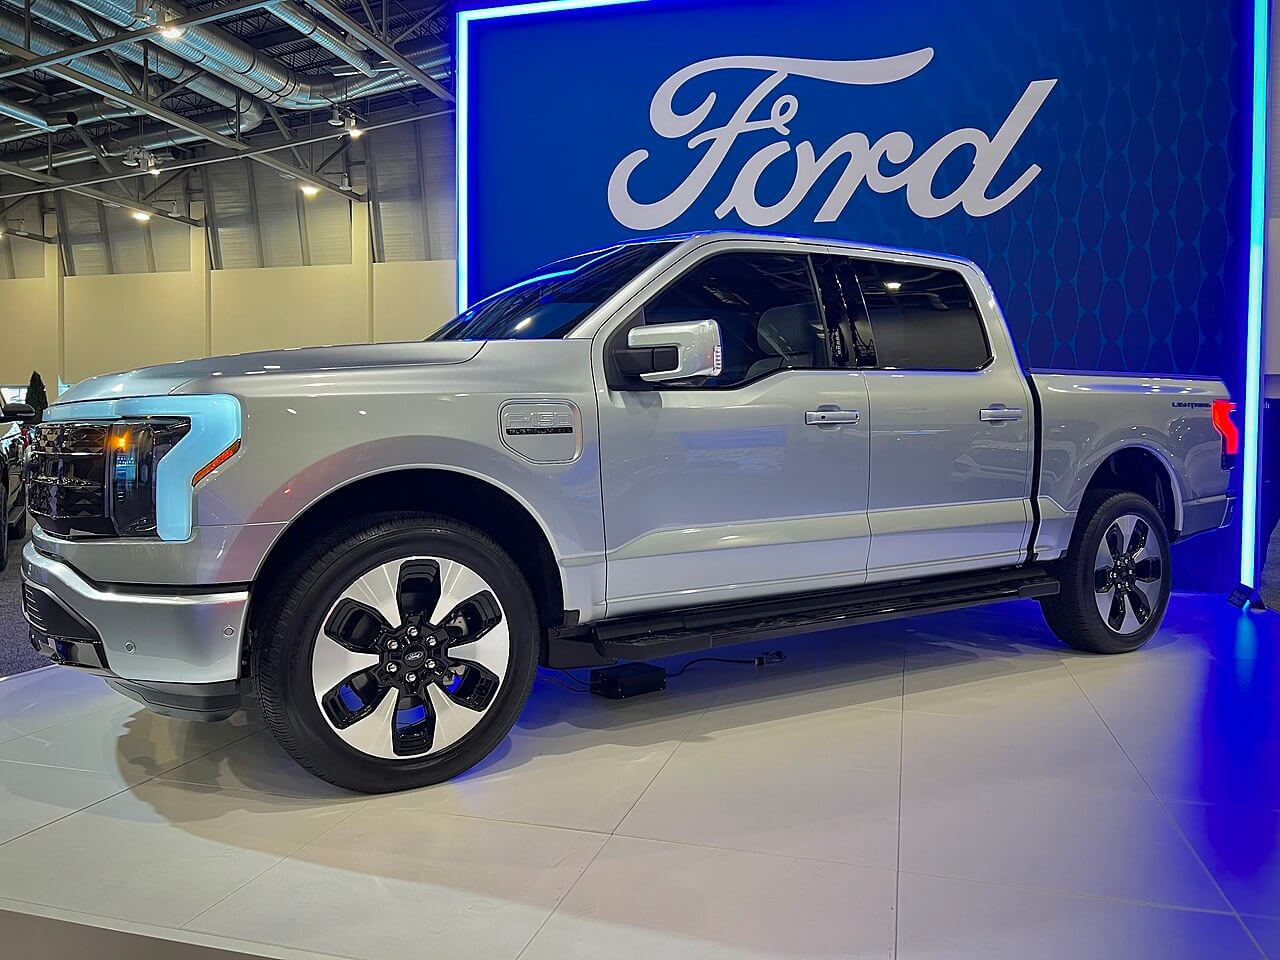 Ford досяг значного прогресу у збільшенні потужності електромобілів